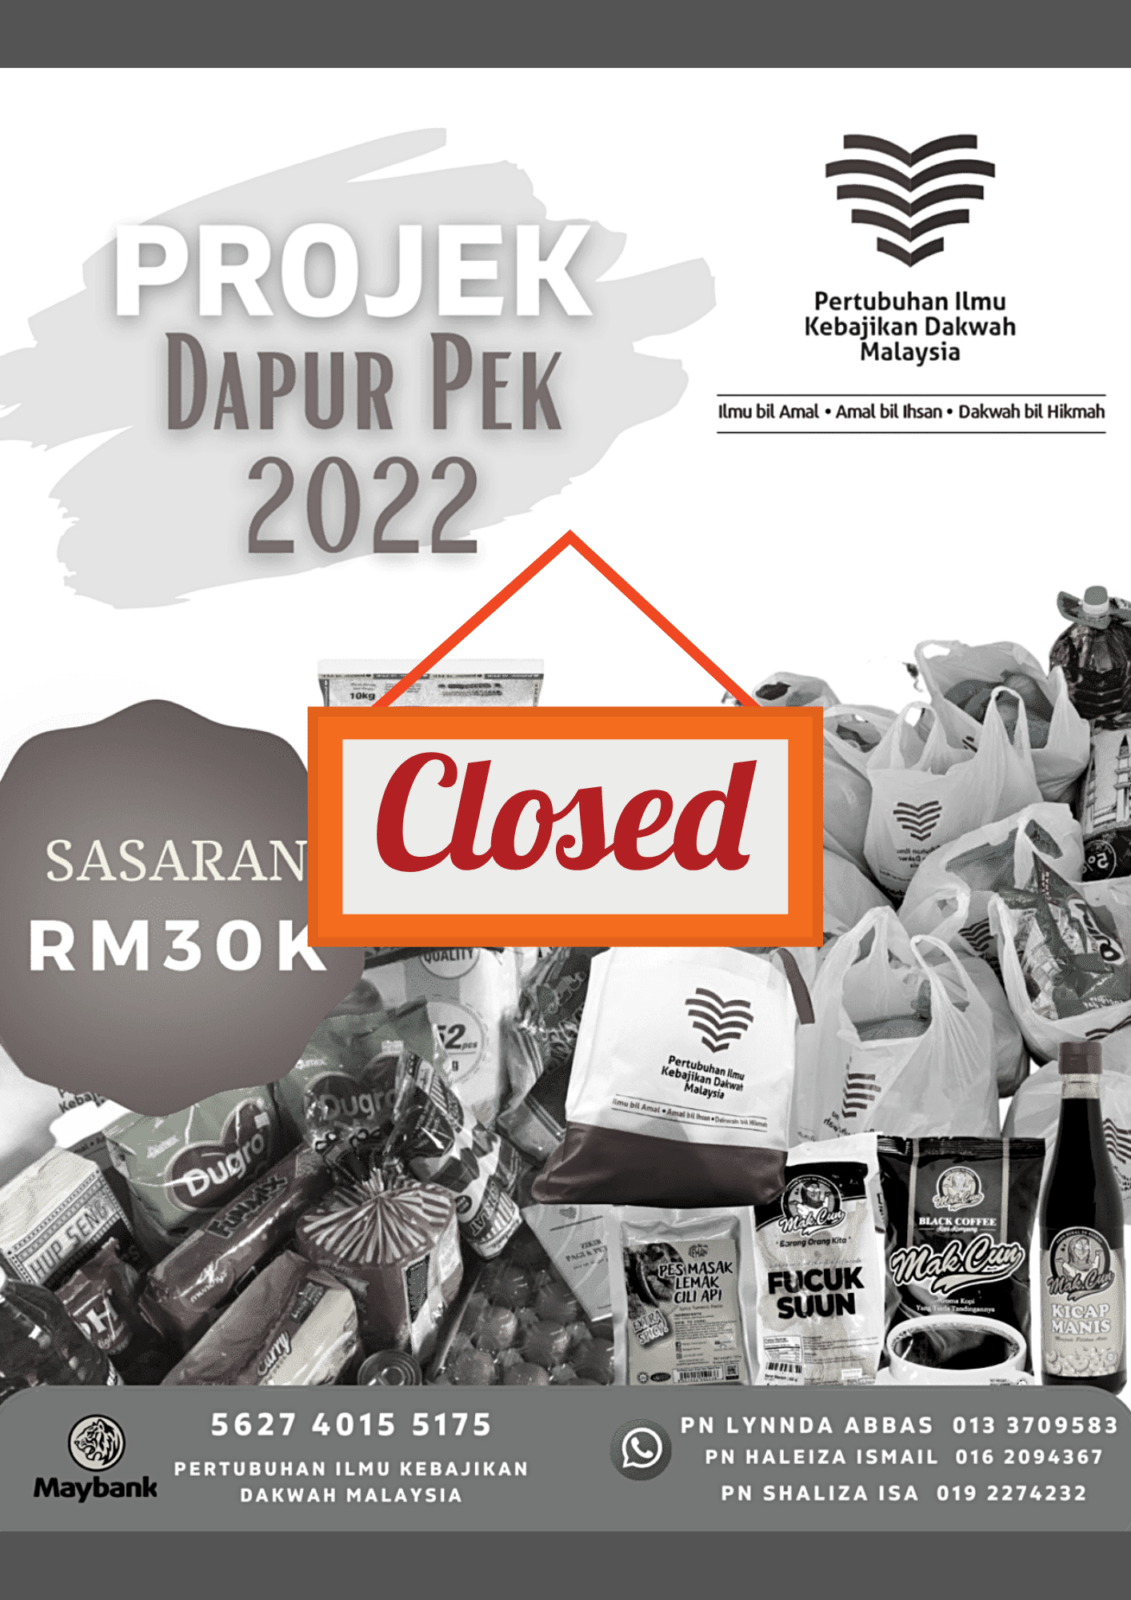 Projek Dapur Pek 2022 Closed